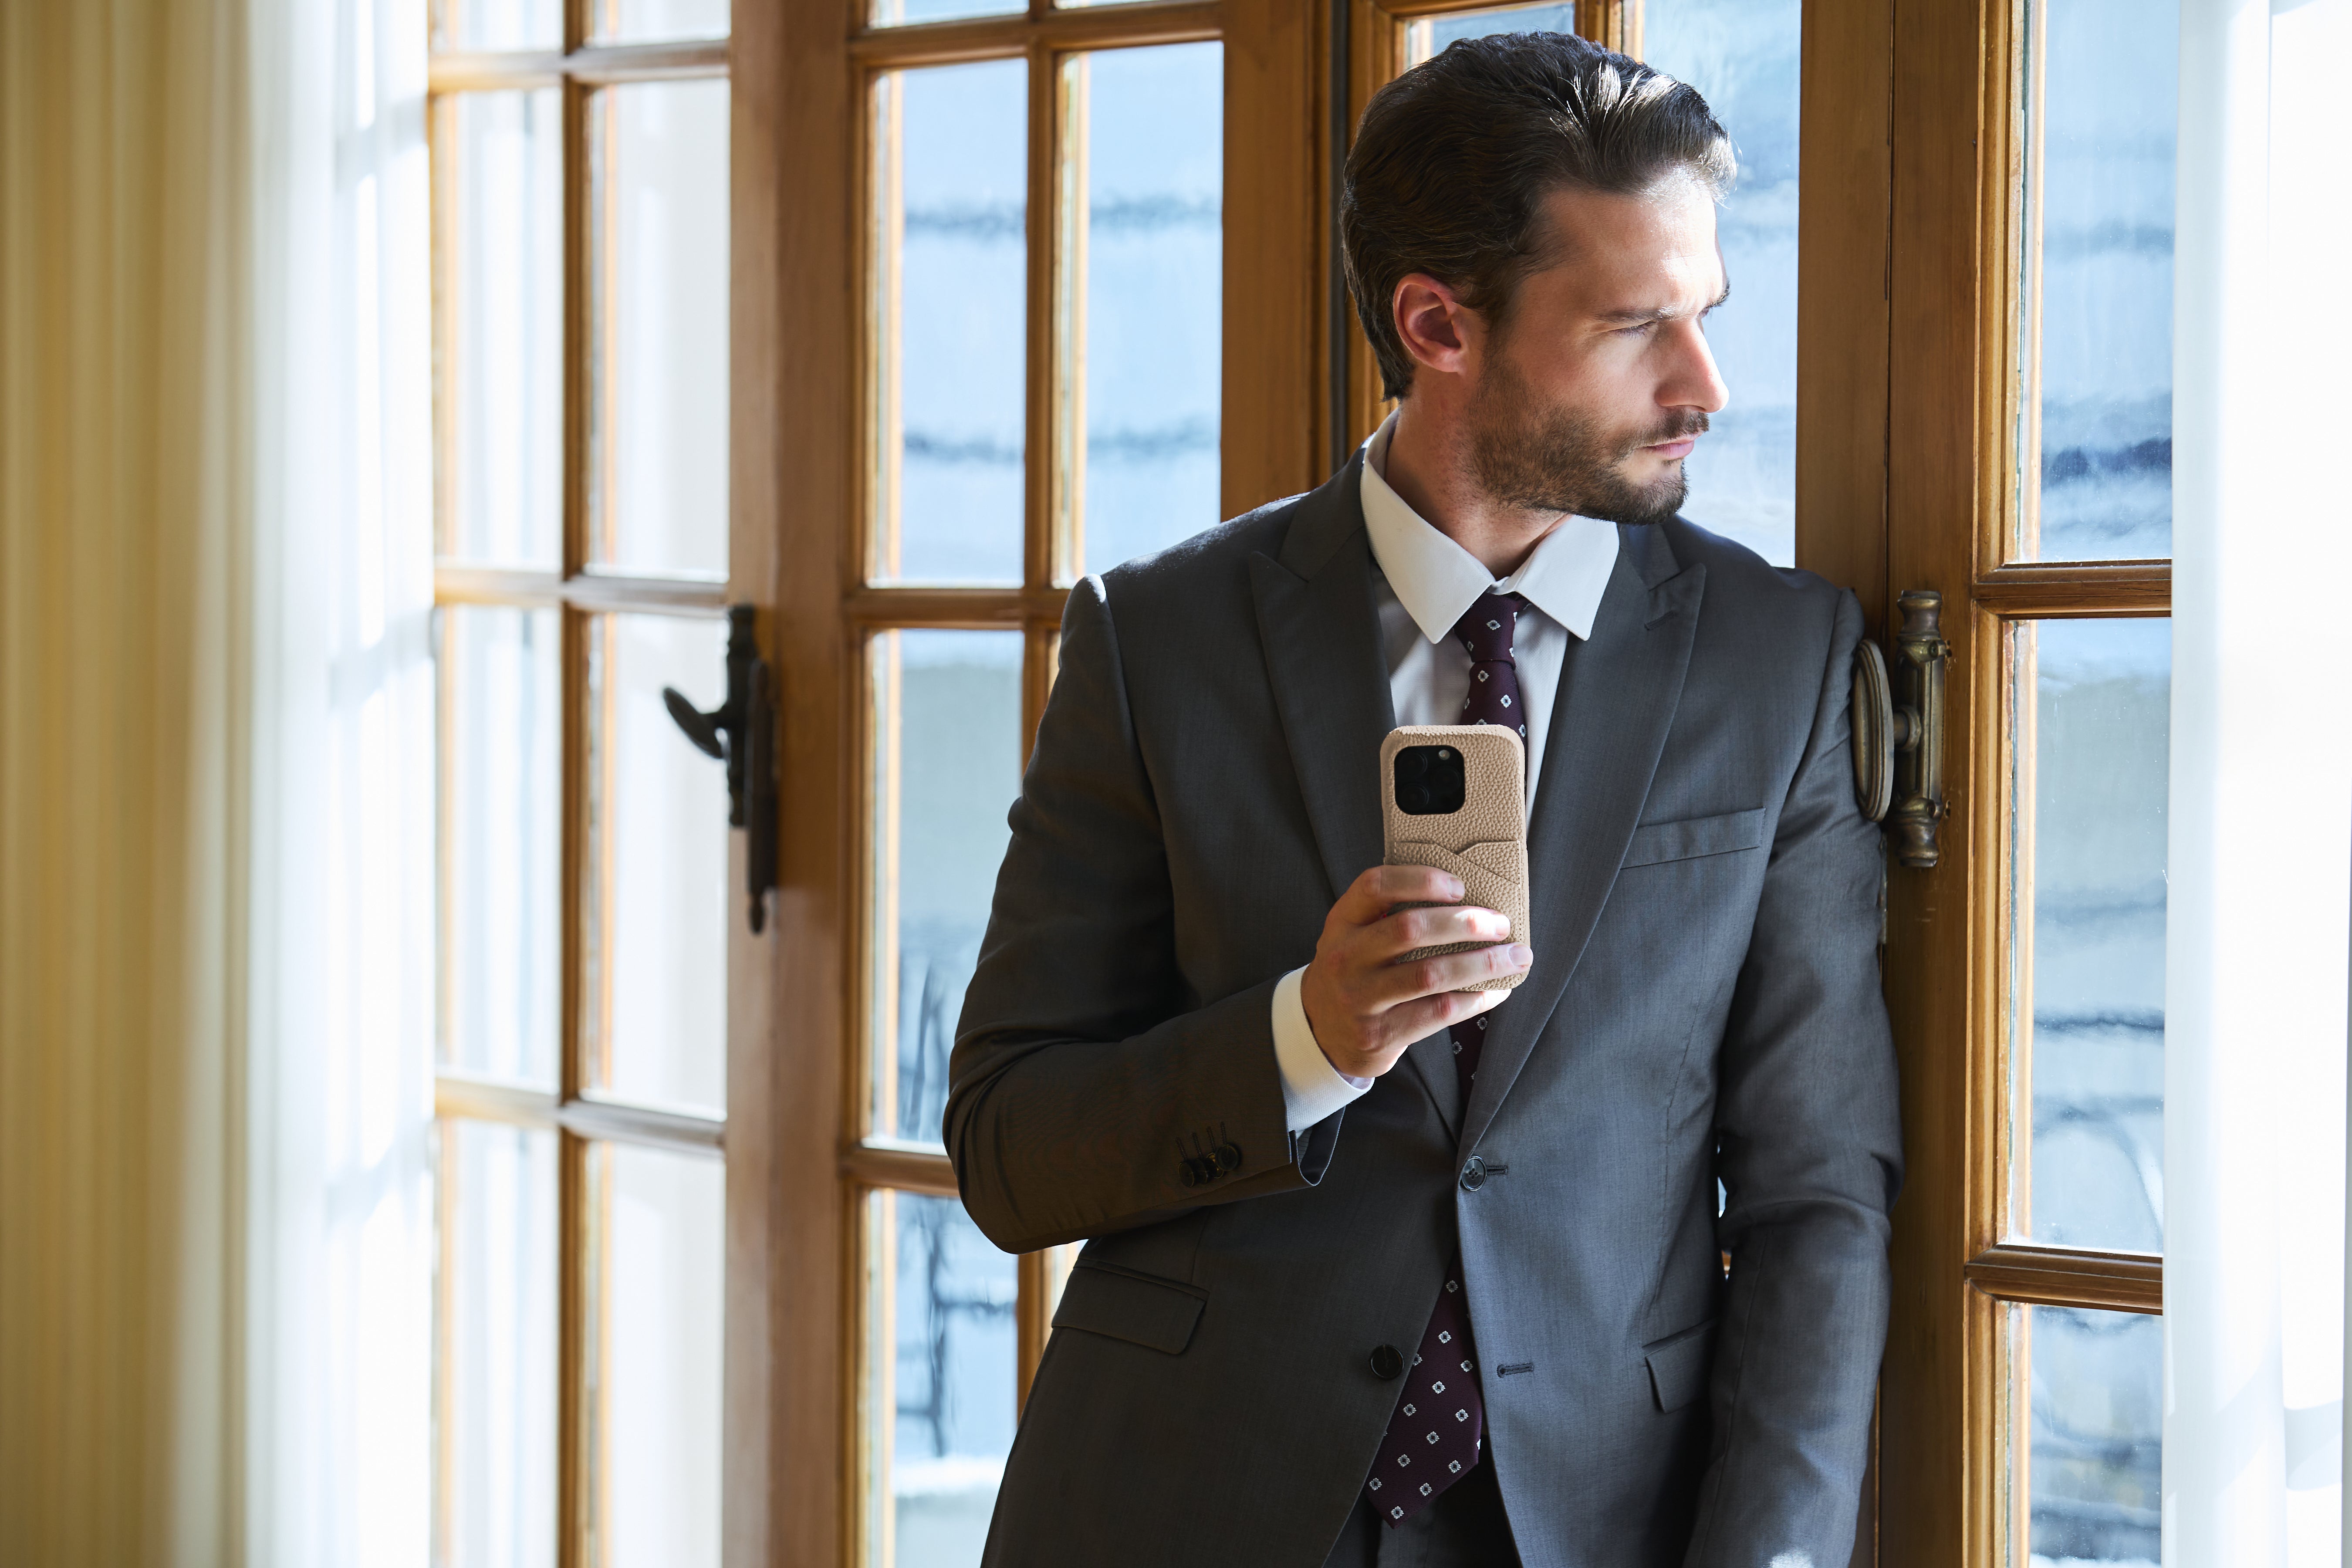 Pewny siebie biznesmen w stylowym stroju biznesowym prezentuje etui BONAVENTURA na iPhone'a.